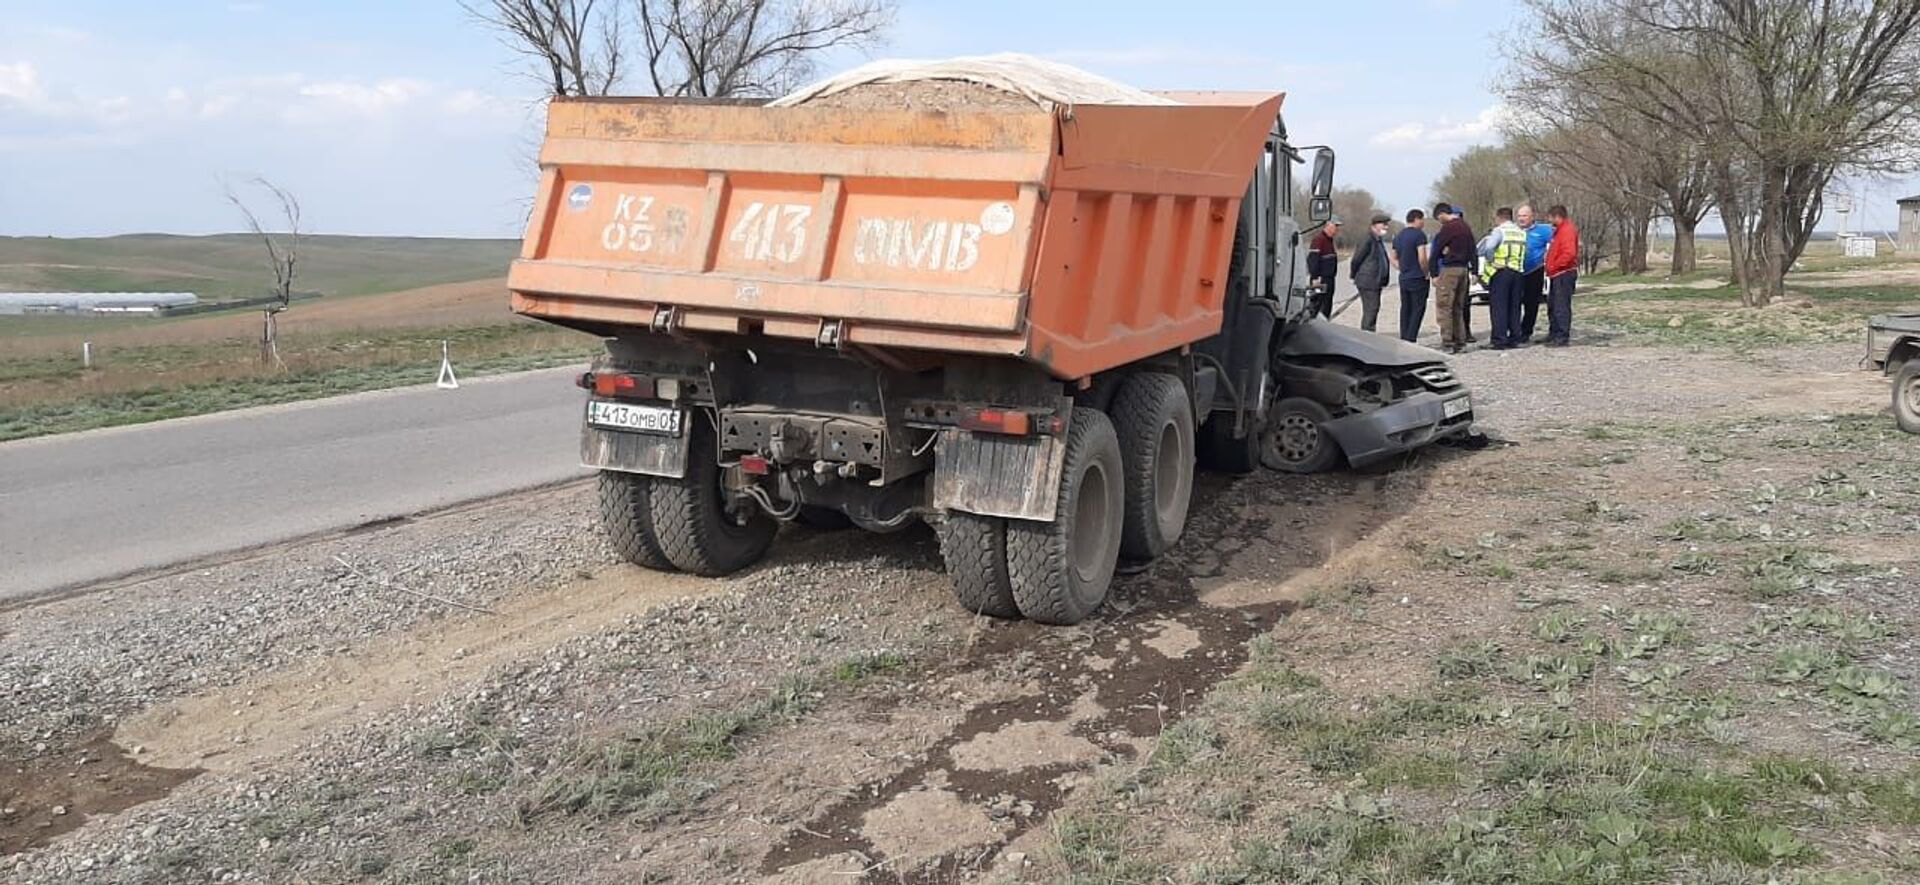 Смертельное ДТП в Алматинской области: грузовик протащил авто 10 метров - Sputnik Казахстан, 1920, 19.04.2021